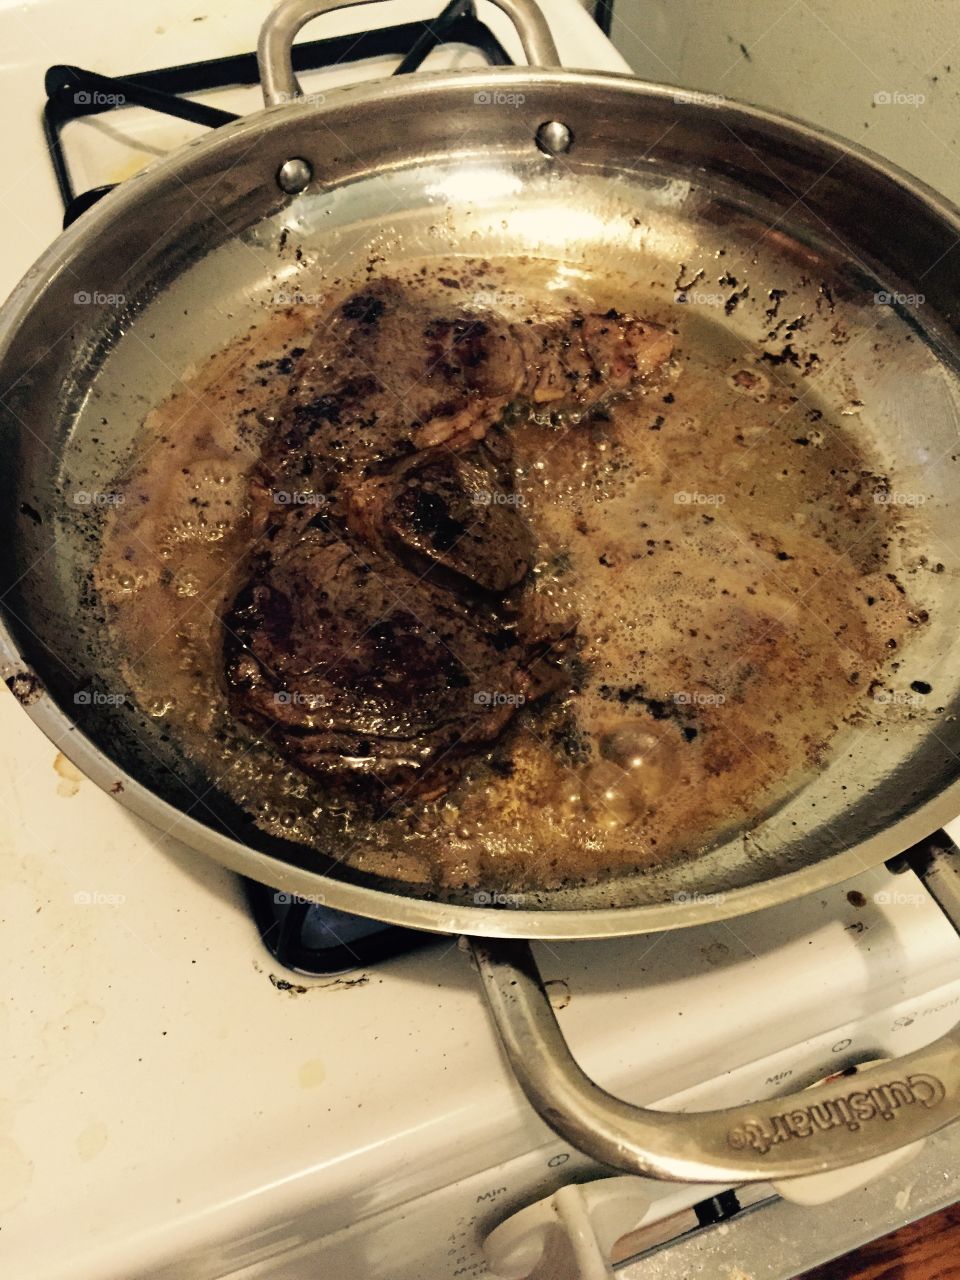 Steak in pan